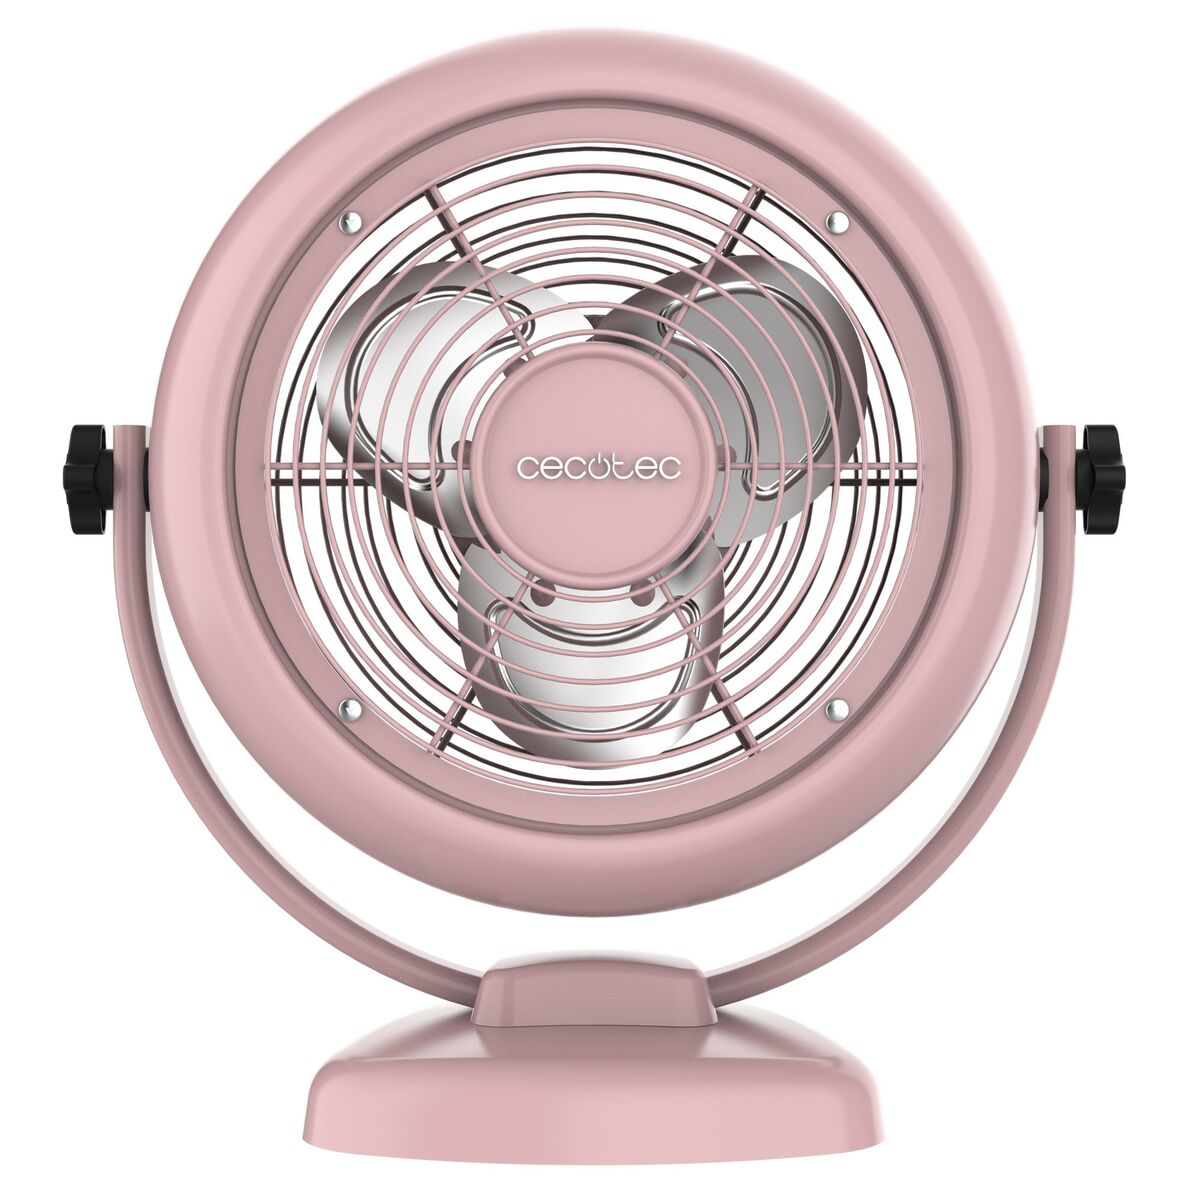 Table Fan Cecotec 800 20 W Pink